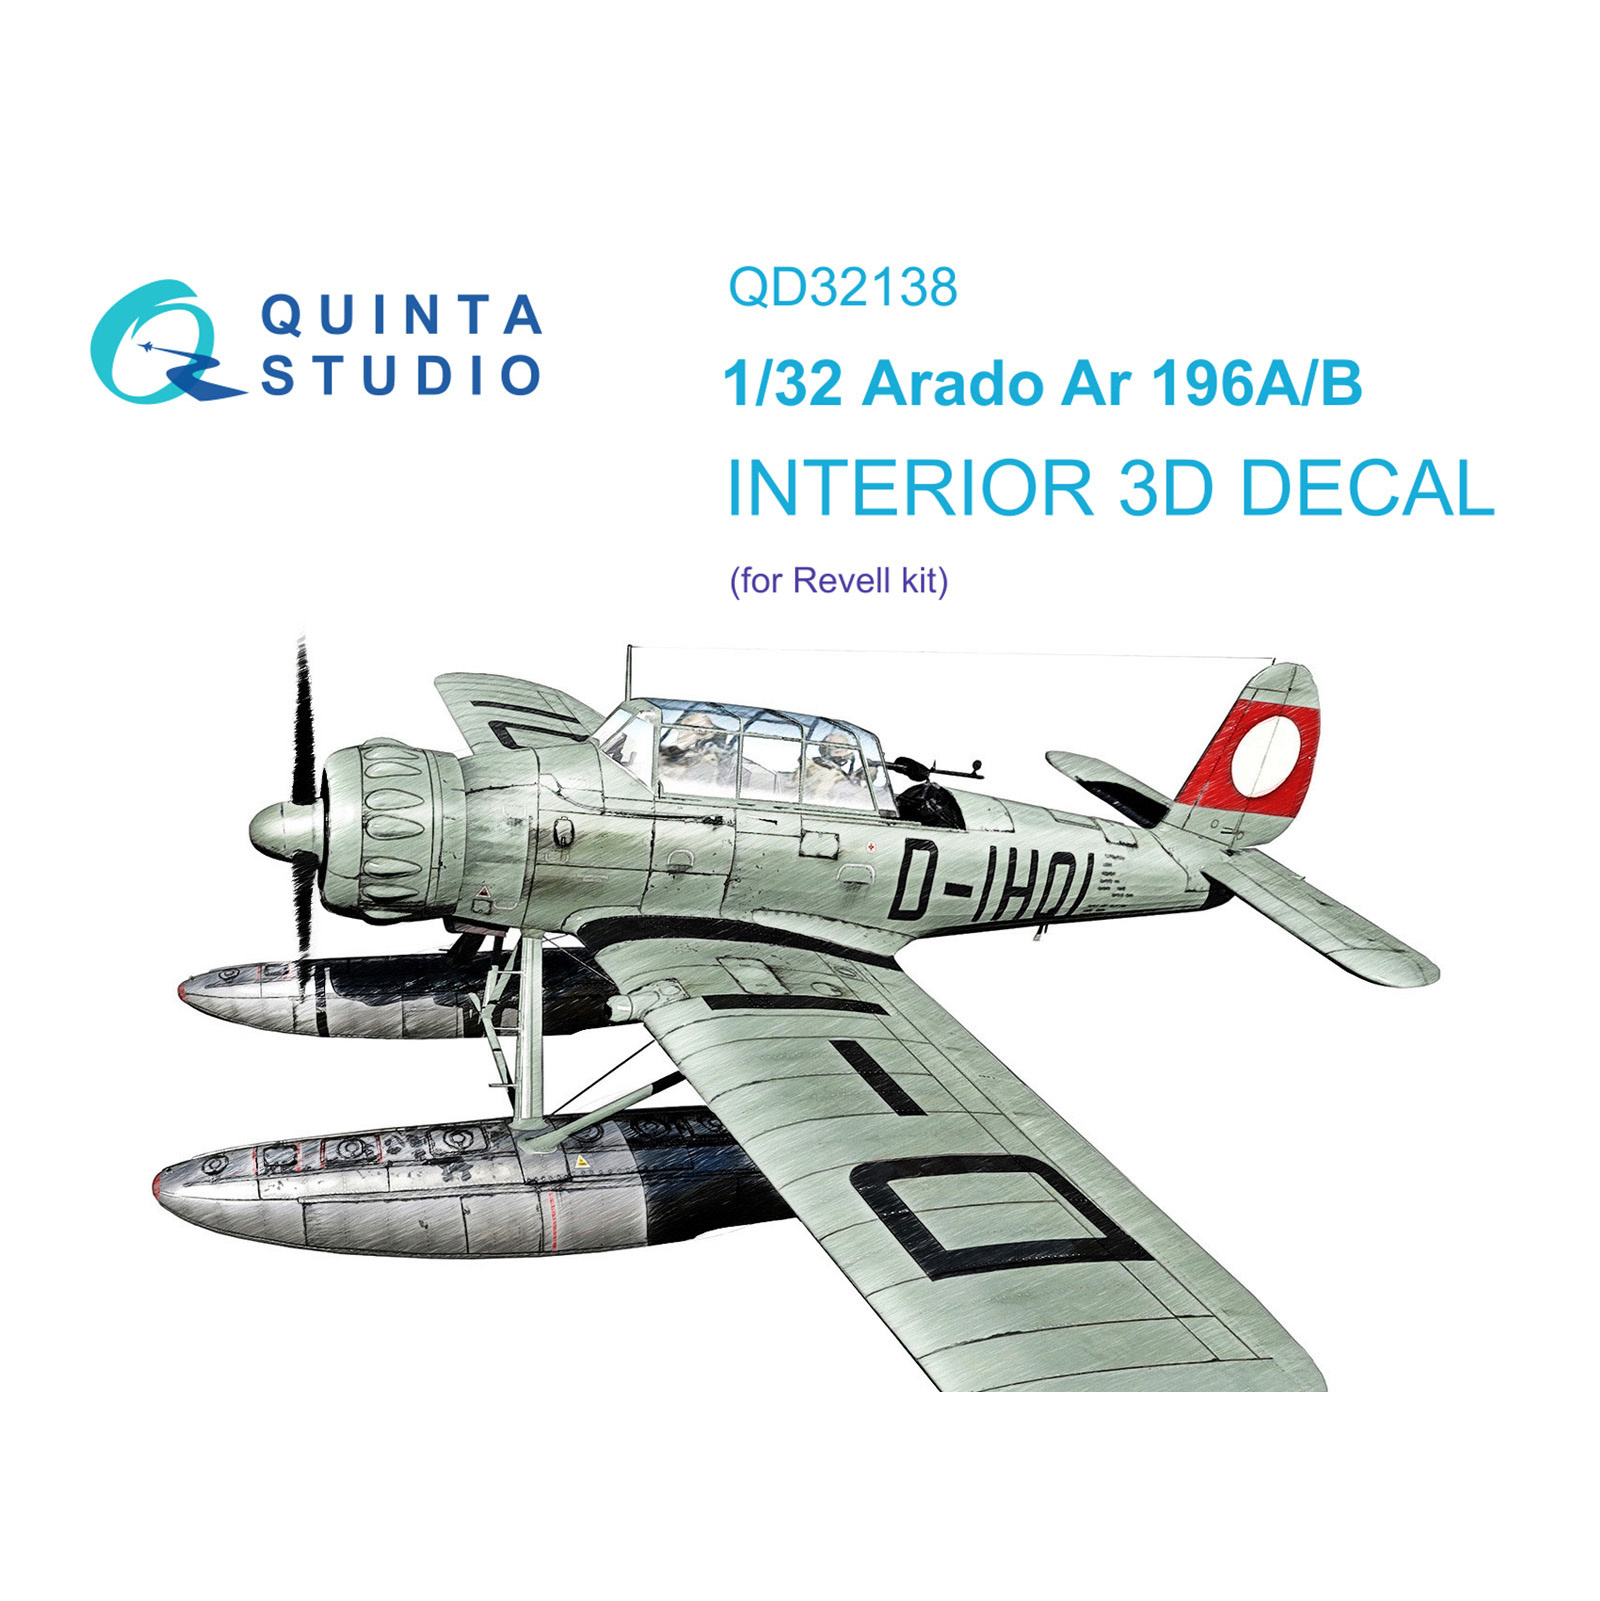 QD32138 Quinta Studio 1/32 3D Декаль интерьера кабины Ar 196A/B (Revell)